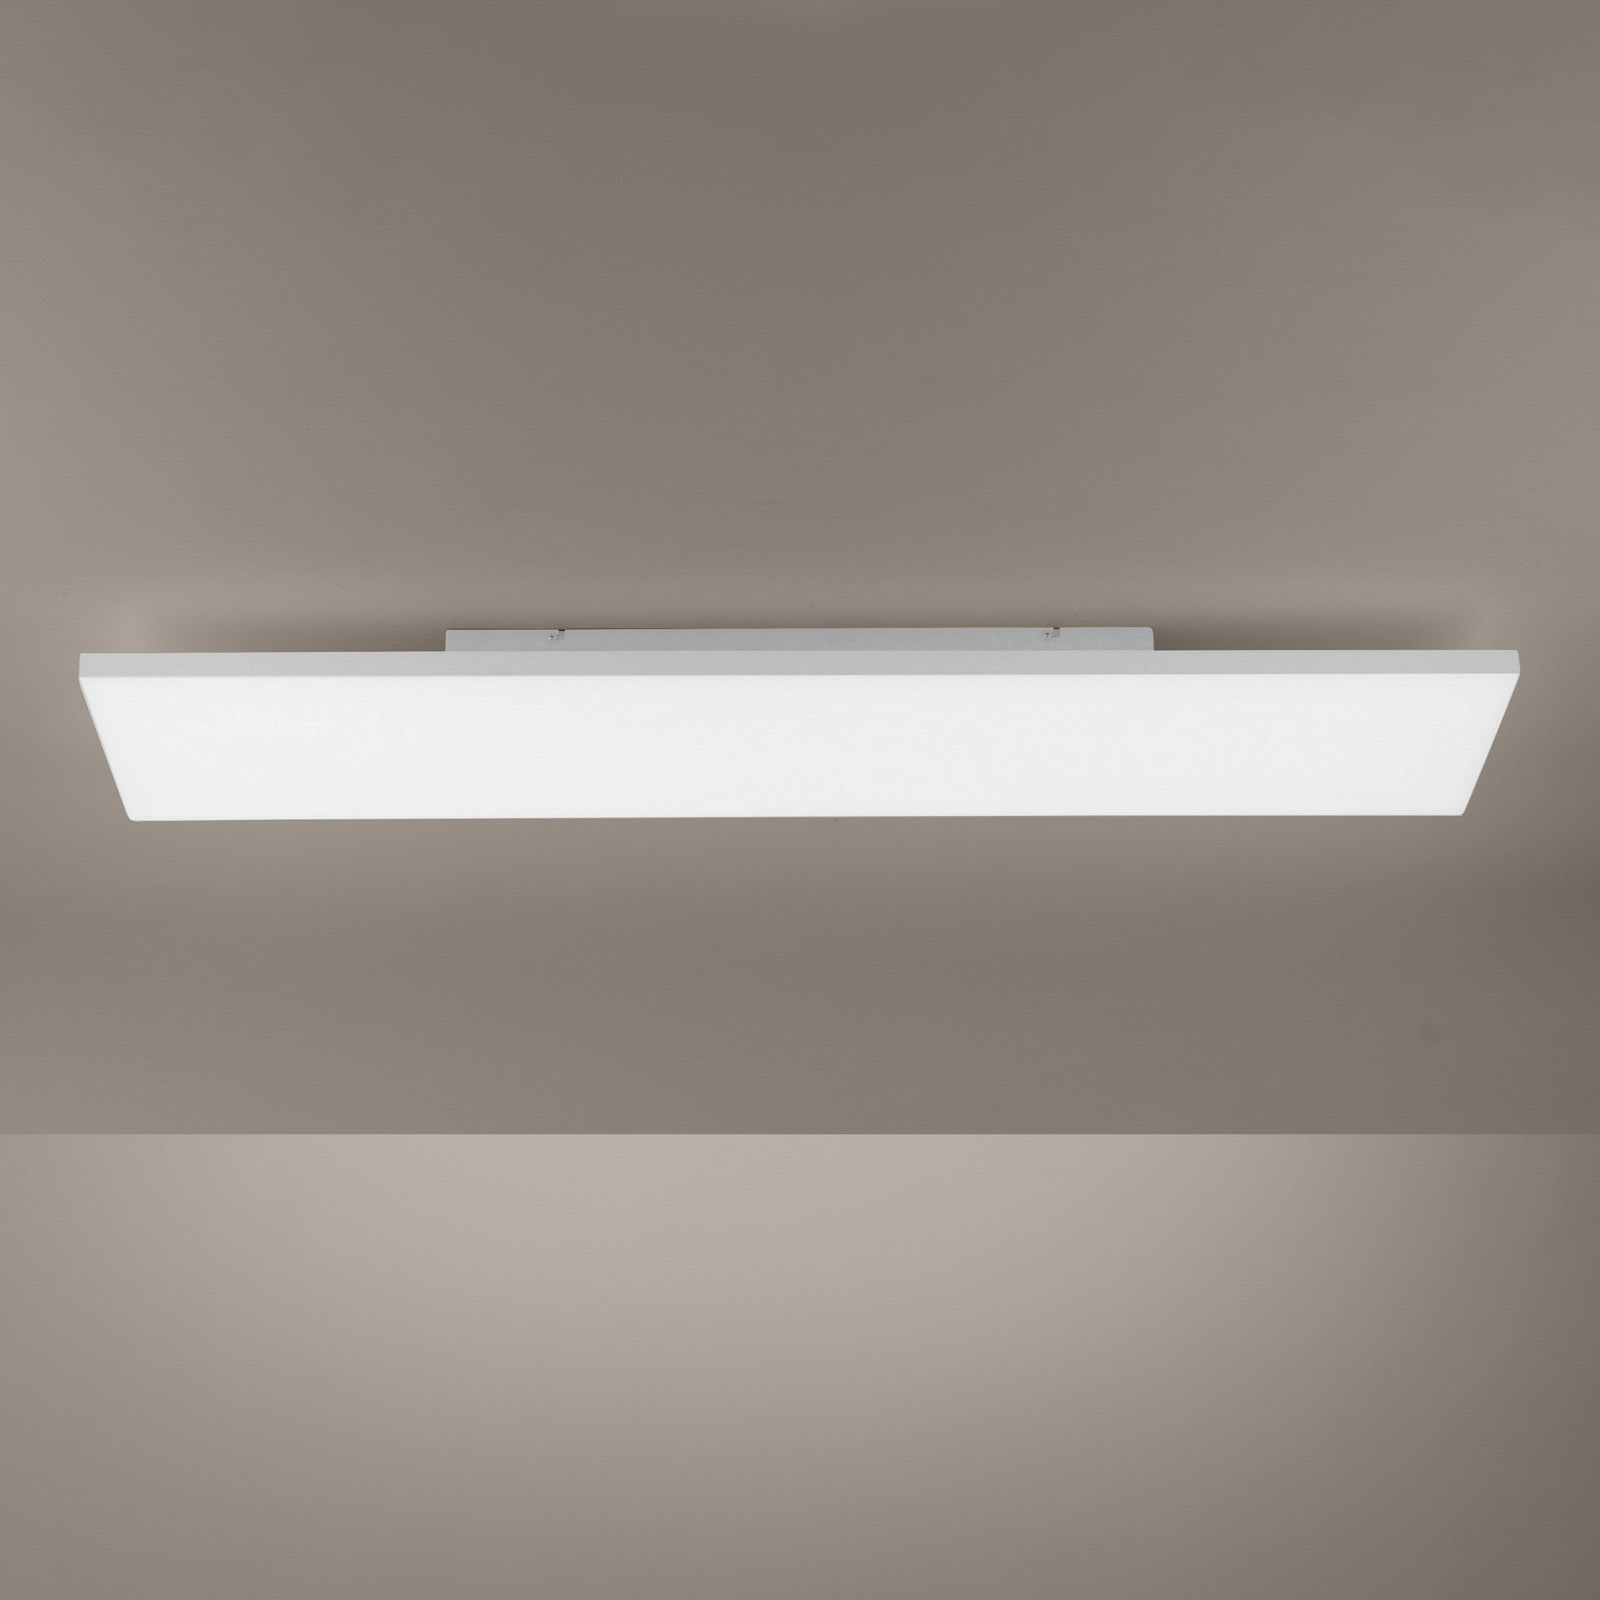 LED lubinis šviestuvas "Canvas", derinamas baltas 100 x 25 cm